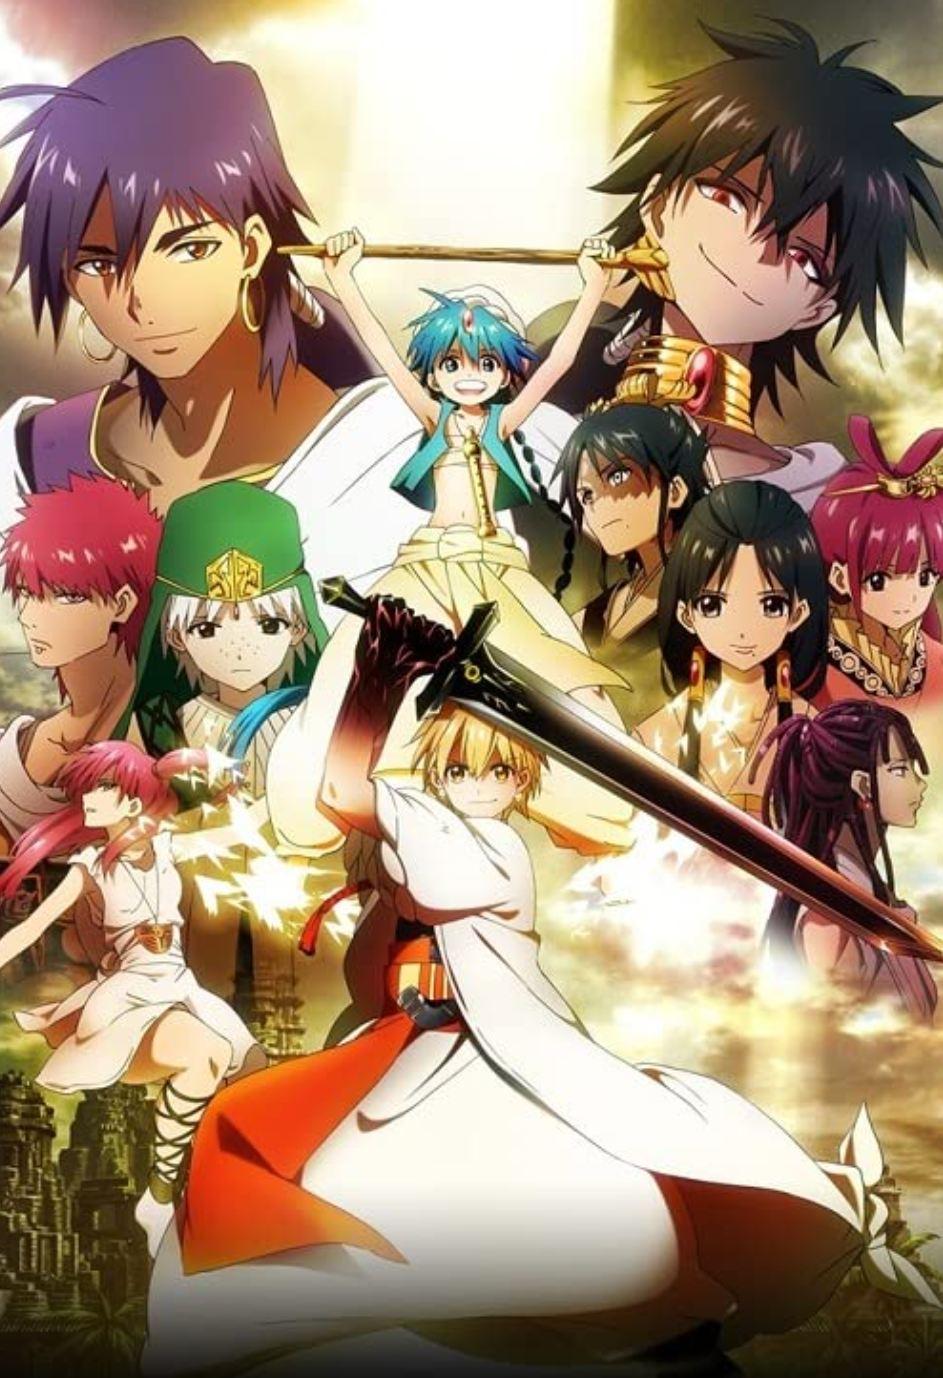 Fantasy Anime 4 - Magi: The Labyrinth of Magic